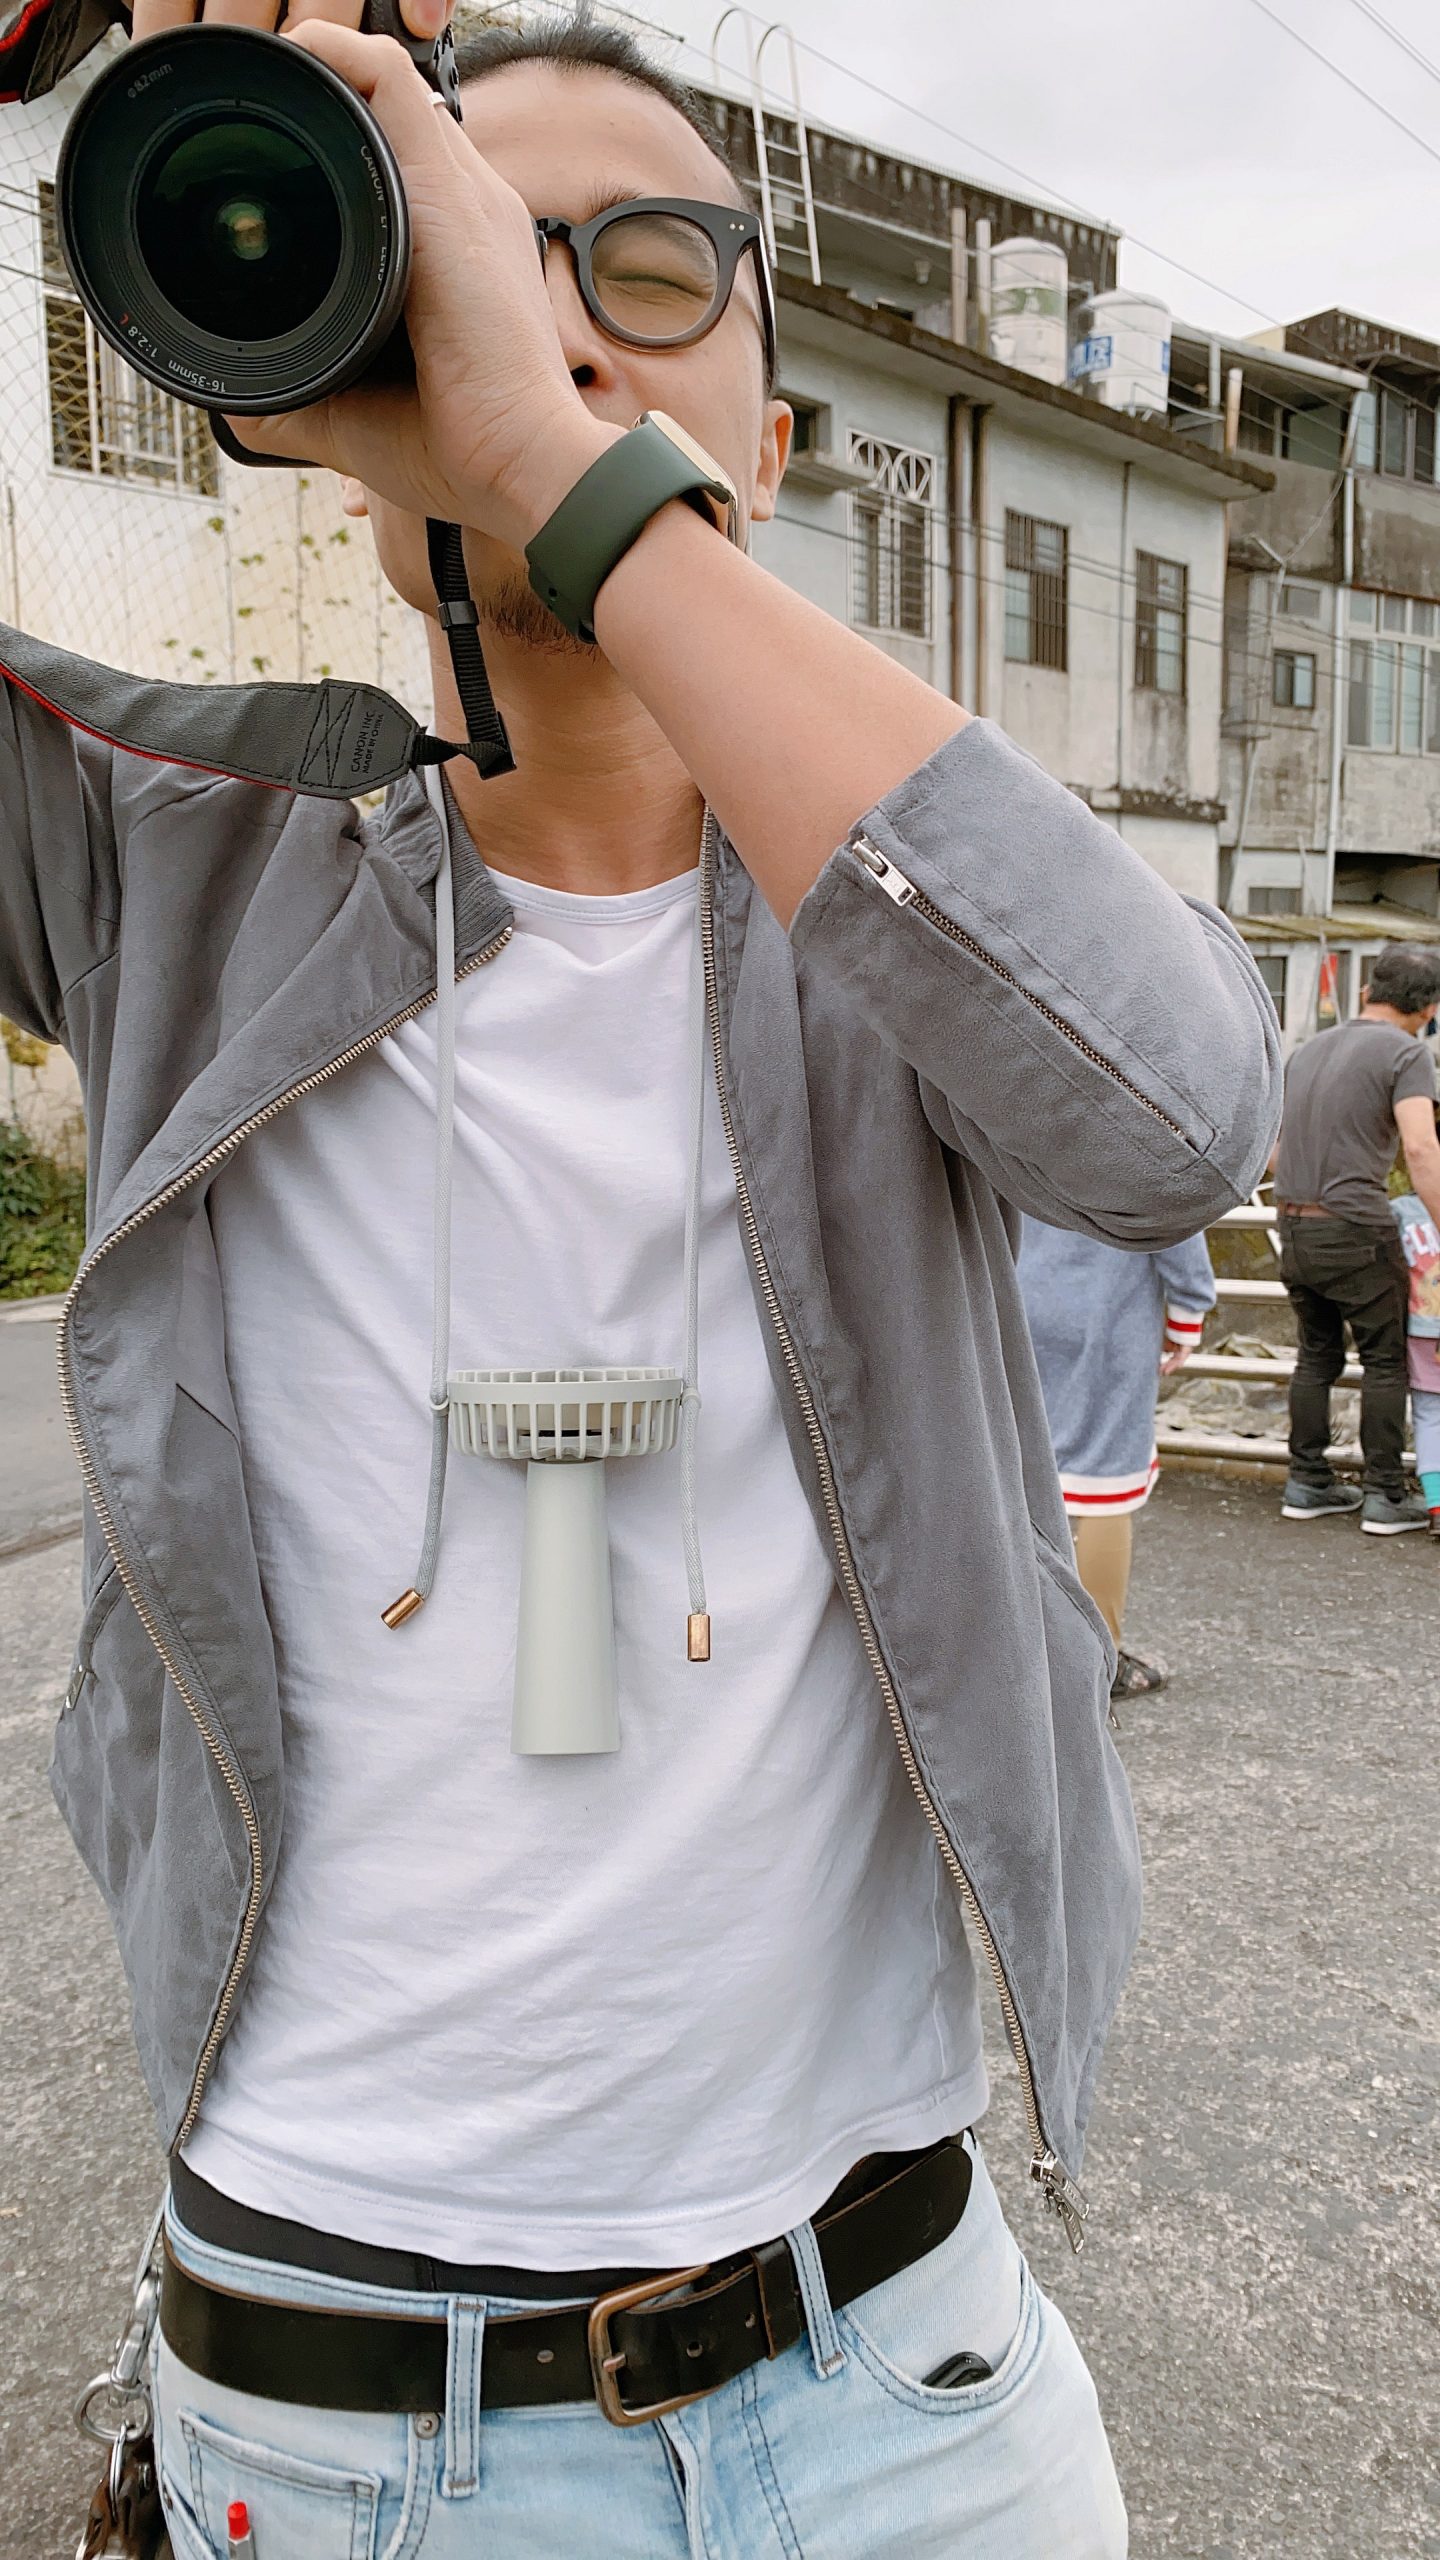 [好物] AIRMATE 艾美特 USB手持小風扇+日本製Connect M遮陽帽